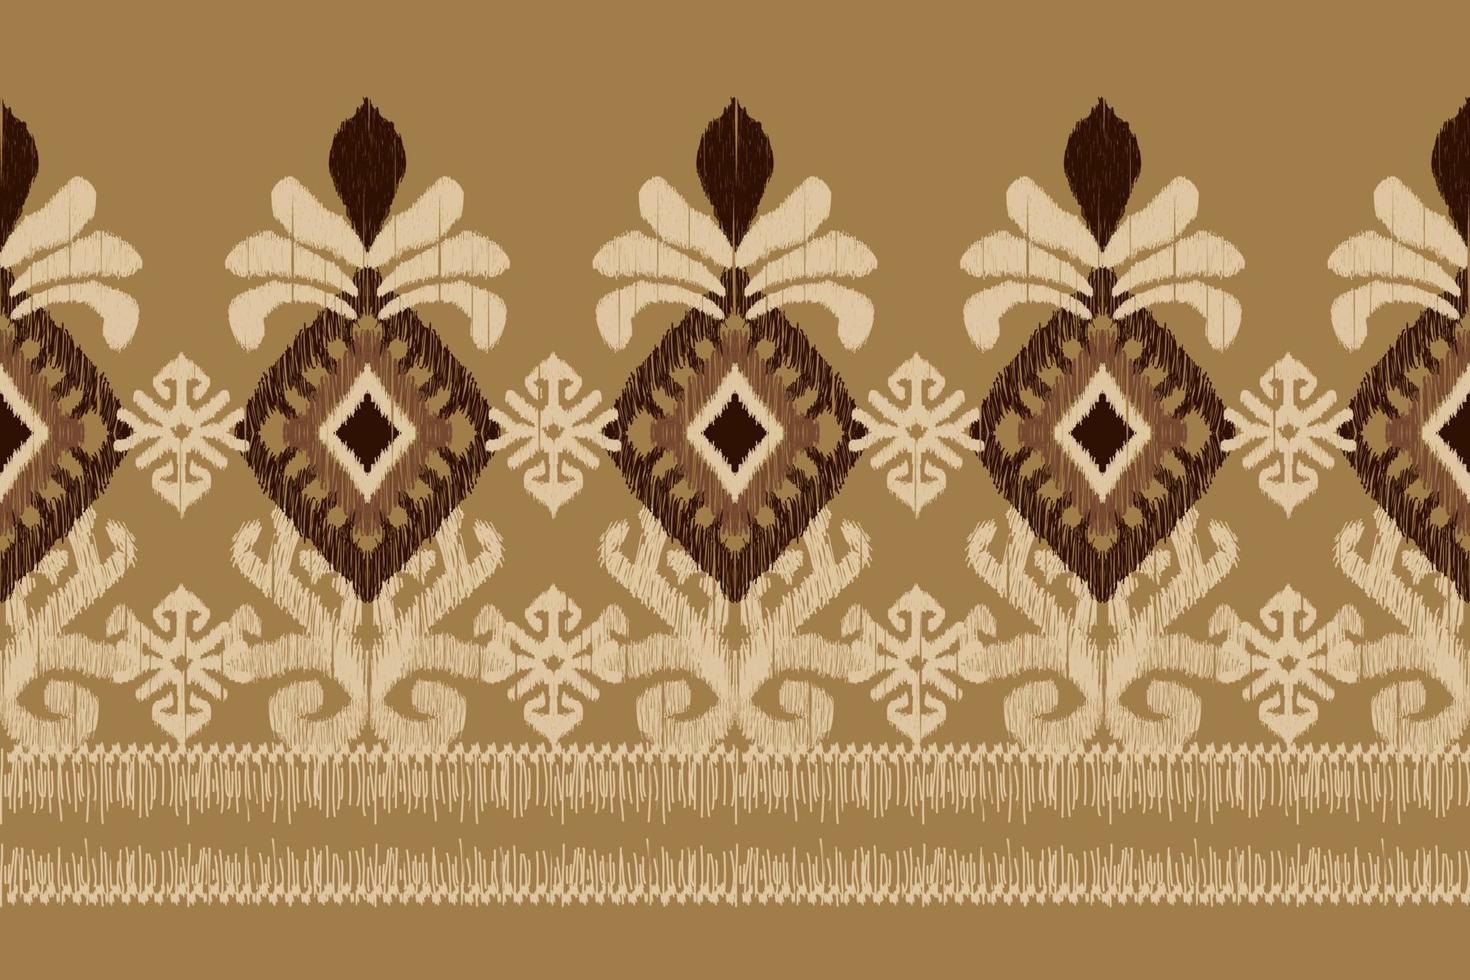 ikat floral paisley bordado em brown background.geometric étnica oriental padrão tradicional.asteca estilo abstrato vector illustration.design para textura, tecido, roupas, embrulho, decoração, cachecol.